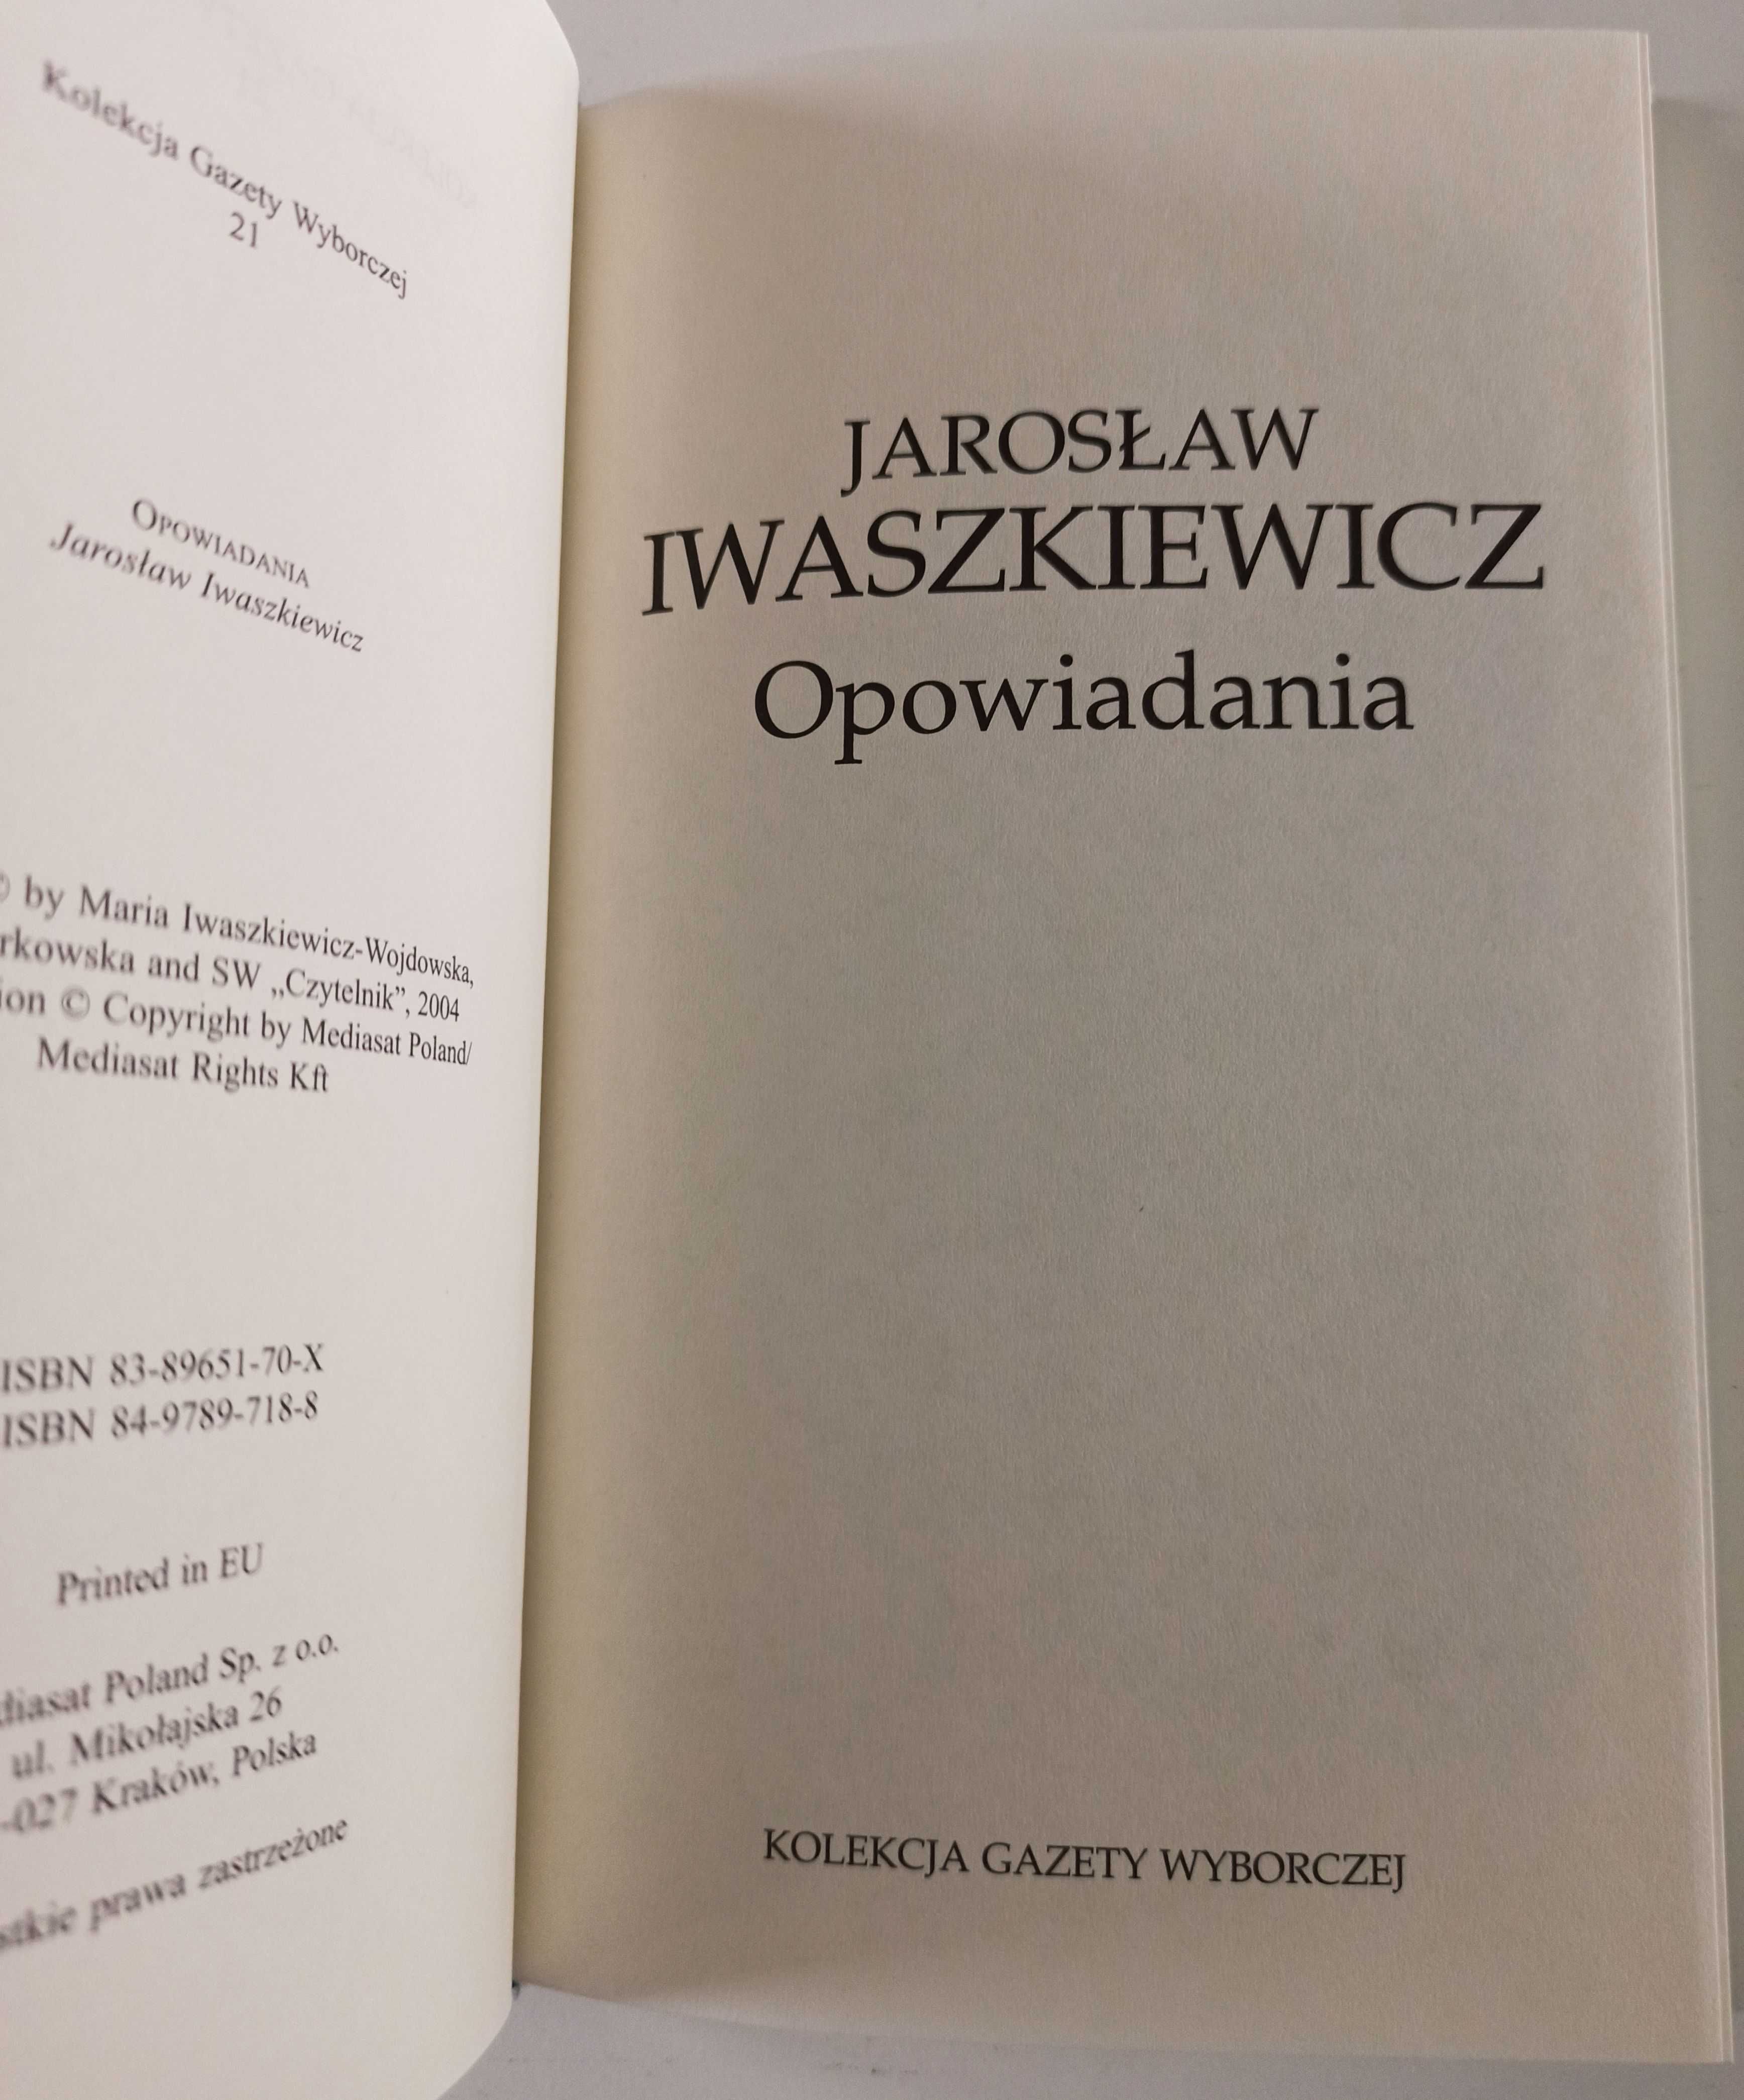 Jarosław Iwaszkiewicz Opowiadania Panny z wilka Brzezina Matka Joanna